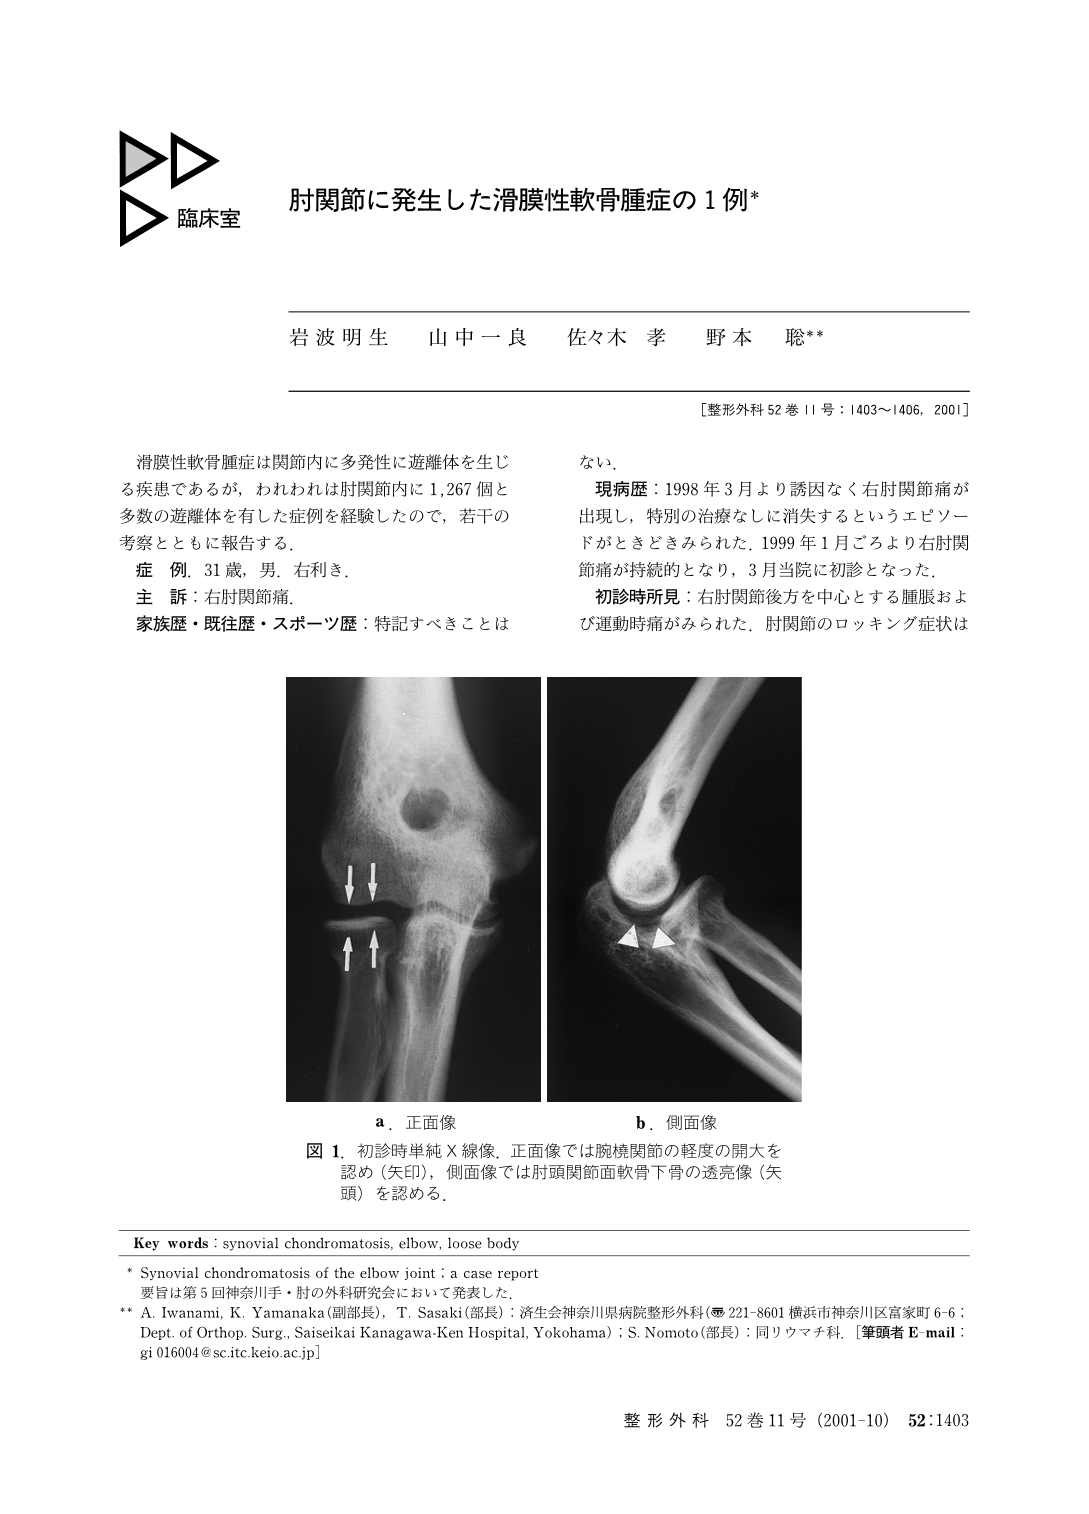 肘関節に発生した滑膜性軟骨腫症の1例 臨床雑誌整形外科 52巻11号 医書 Jp